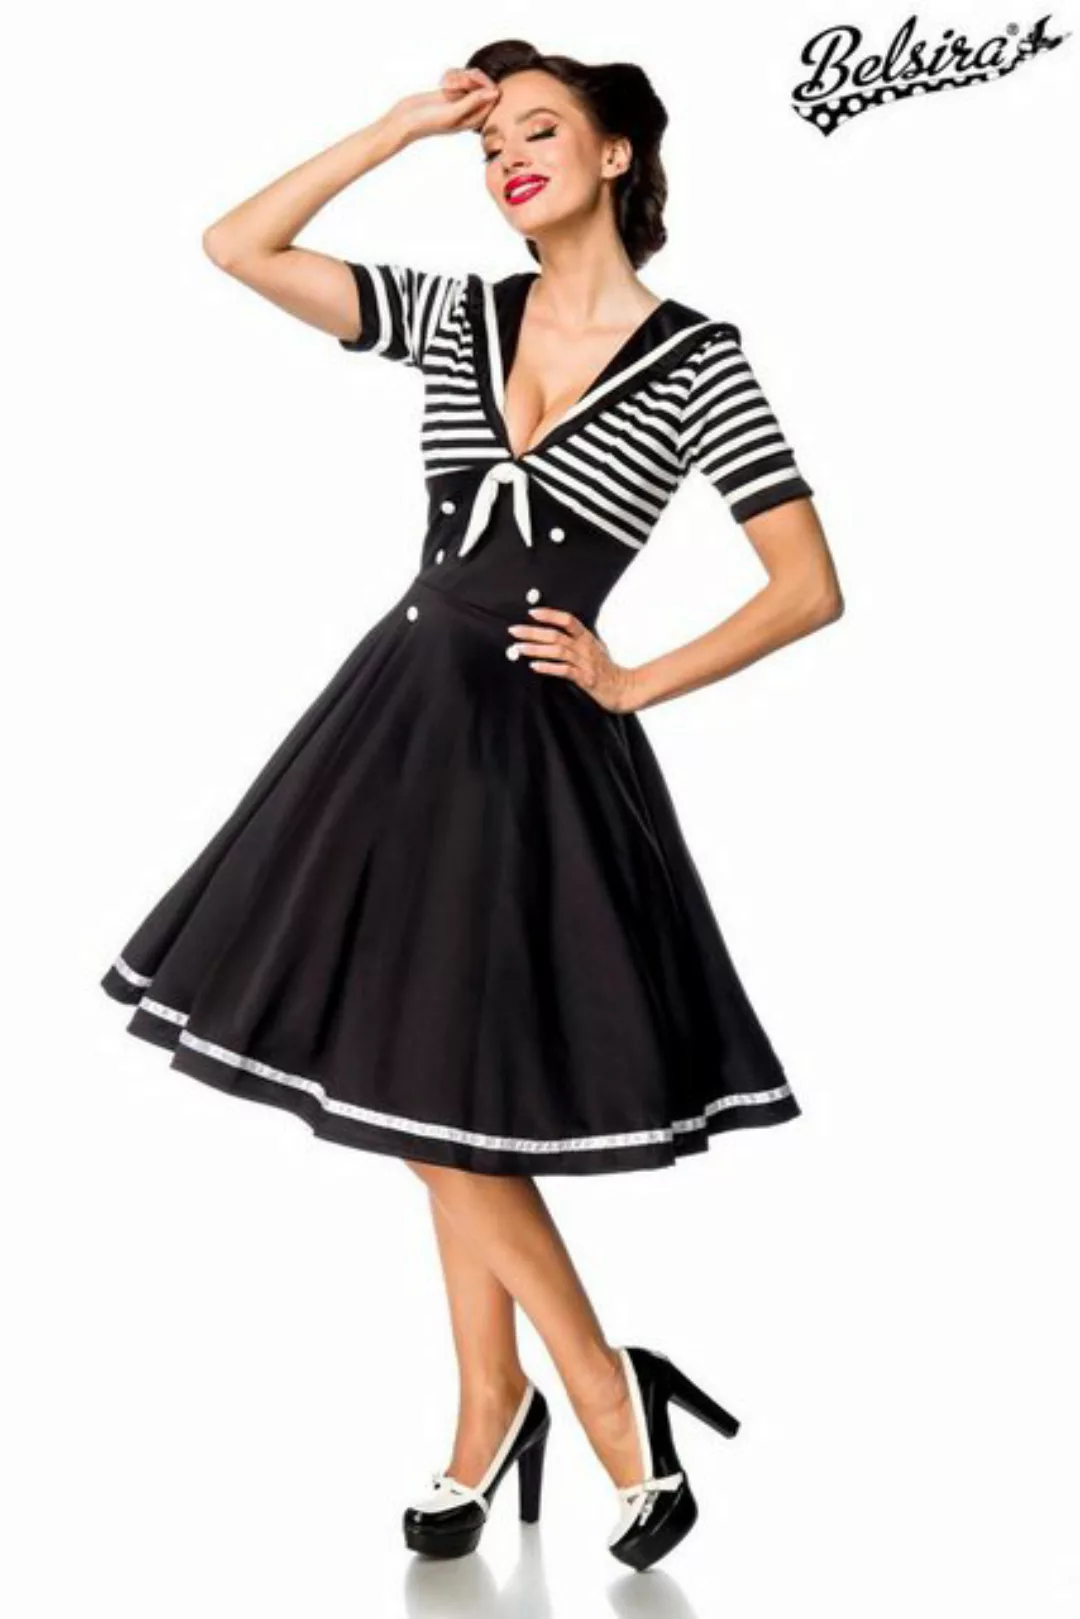 BELSIRA Trachtenkleid Belsira - Swing-Kleid im Marinelook - 3XL - günstig online kaufen